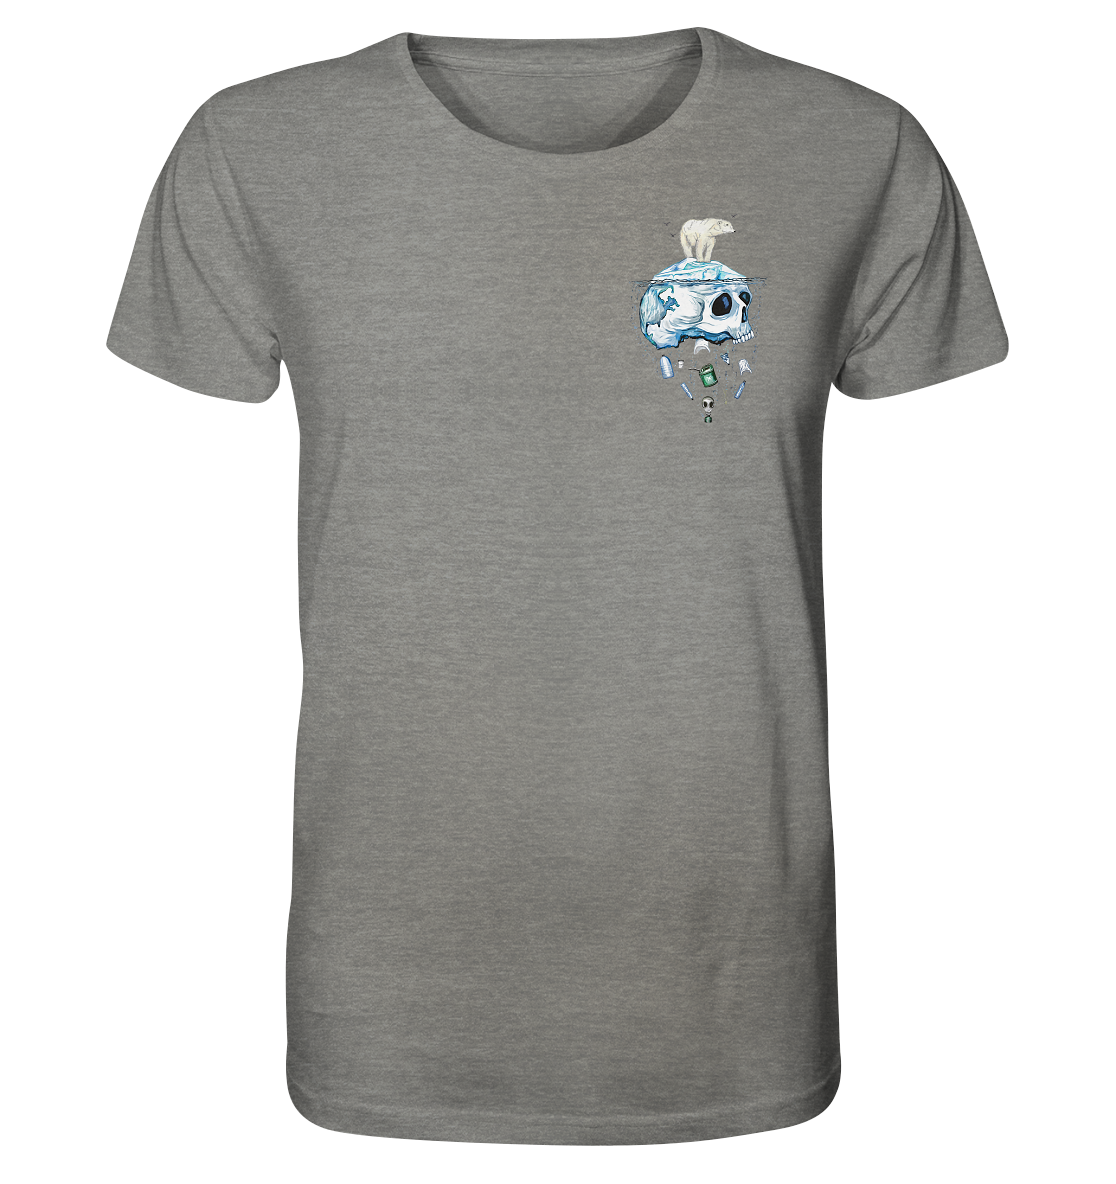 front-organic-shirt-meliert-818381-1116x-3.png